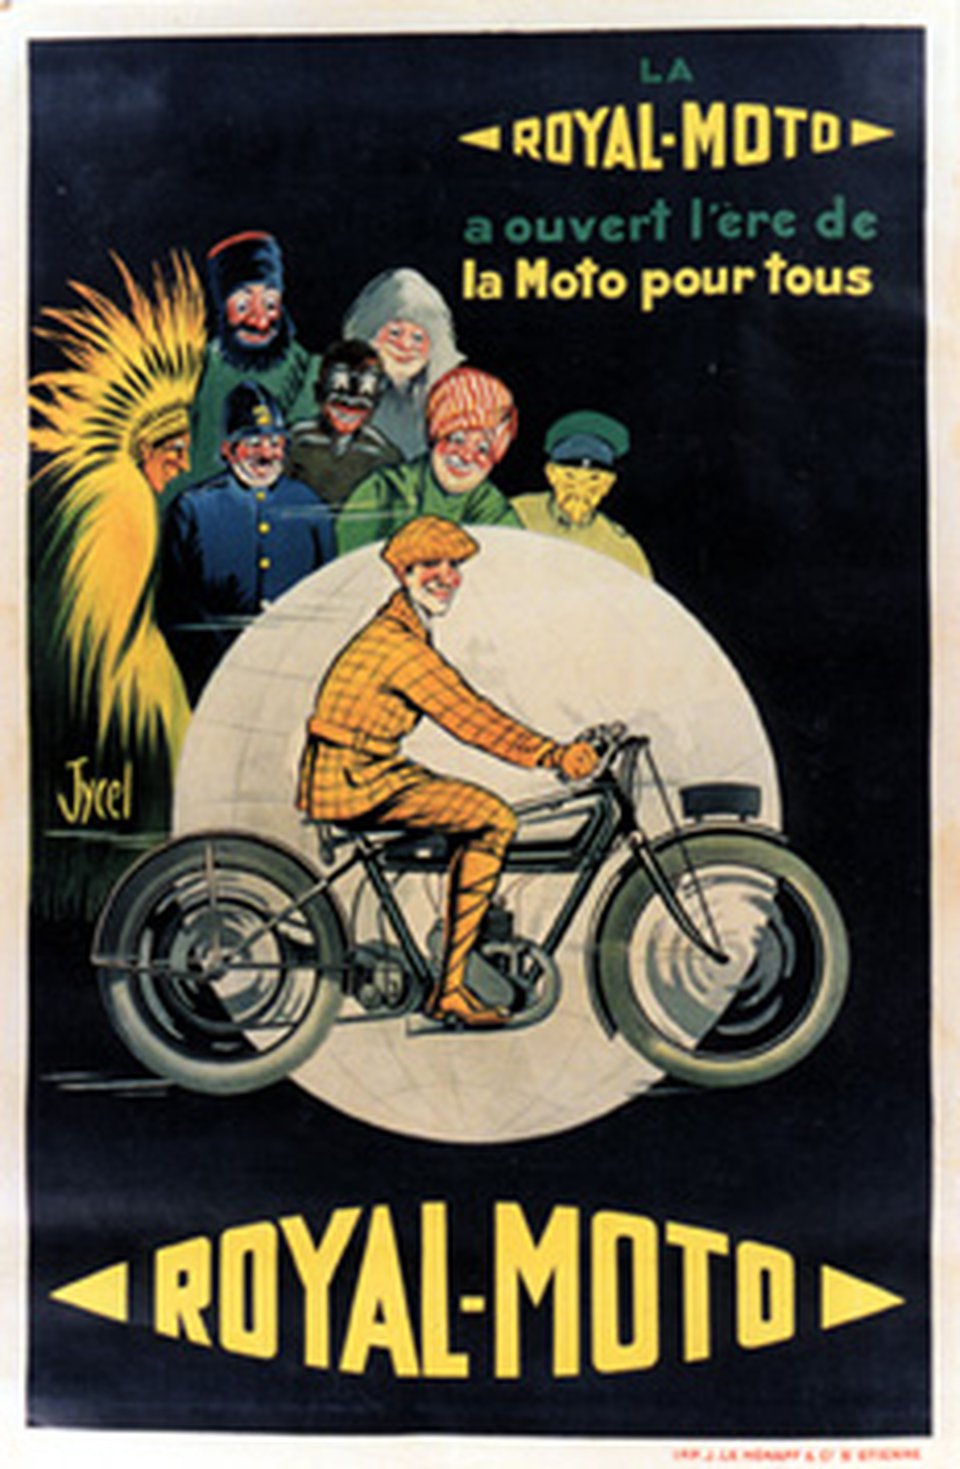 11 la-royal-moto-a-ouvert-lere-de-la-moto-pour-tous-41630-france-vintage-poster.jpg__960x0_q85_subsampling-2_upscale.jpg